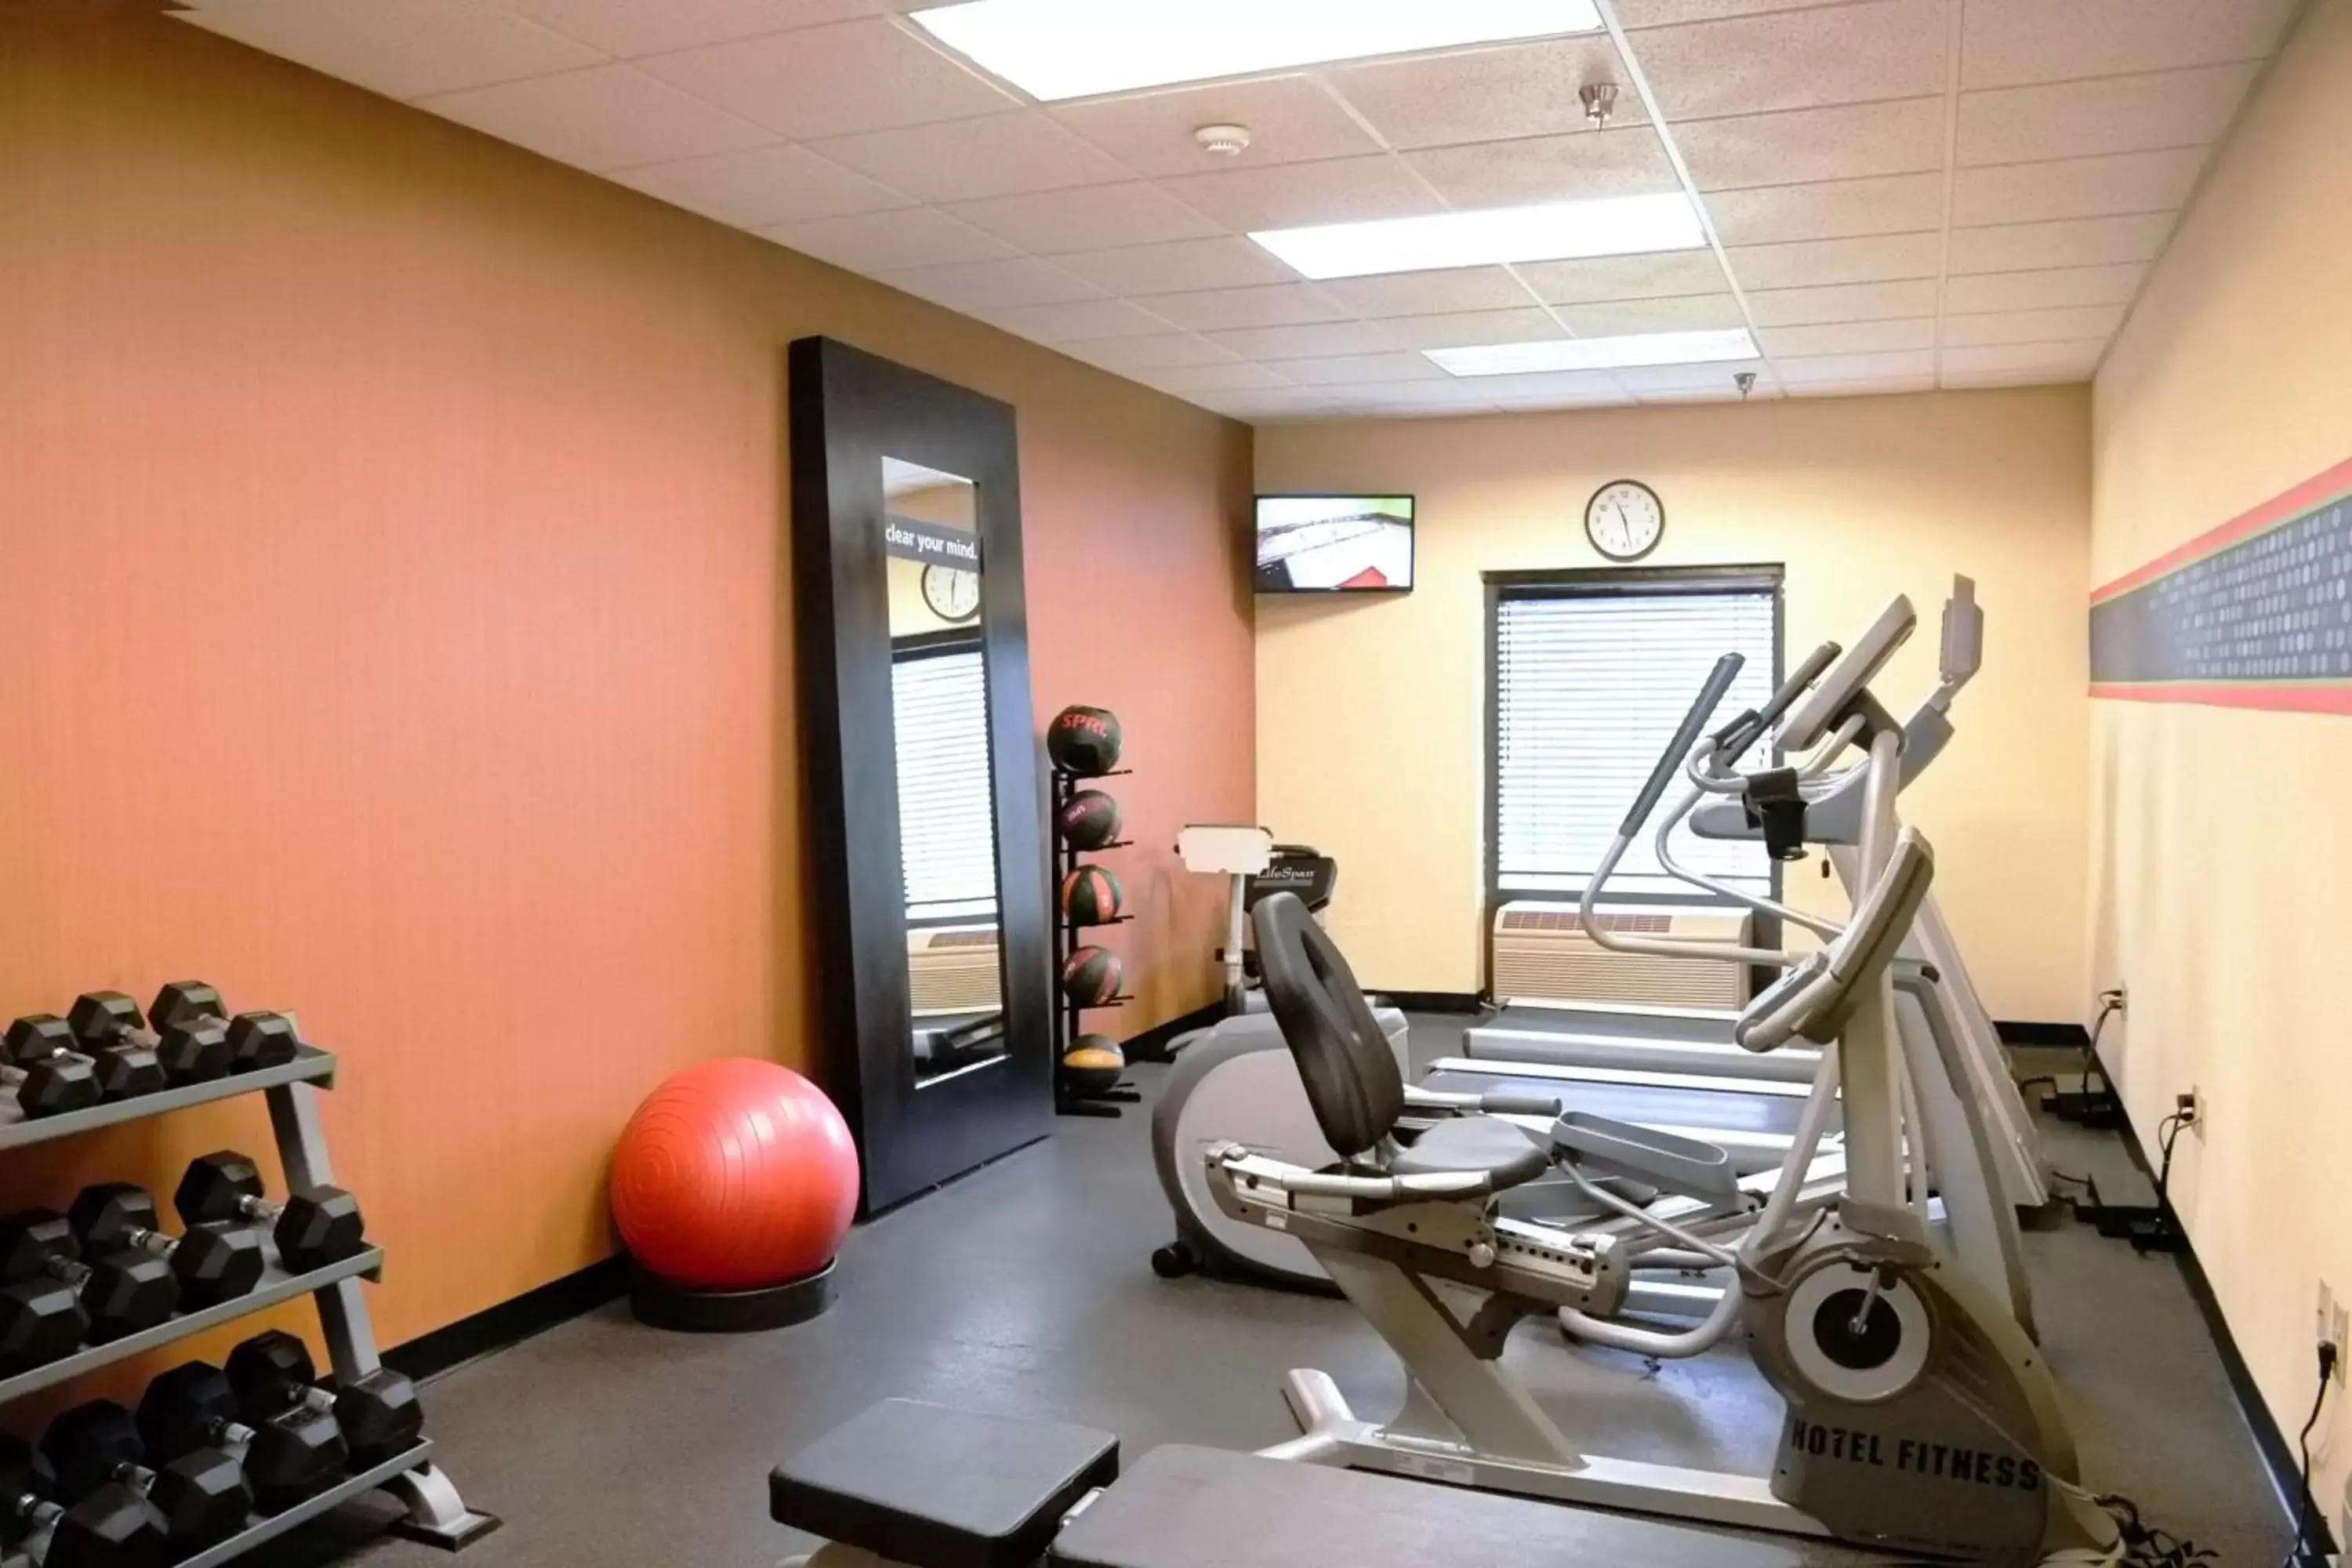 Fitness centre/facilities, Fitness Center/Facilities in Hampton Inn & Suites Birmingham-Pelham - I-65